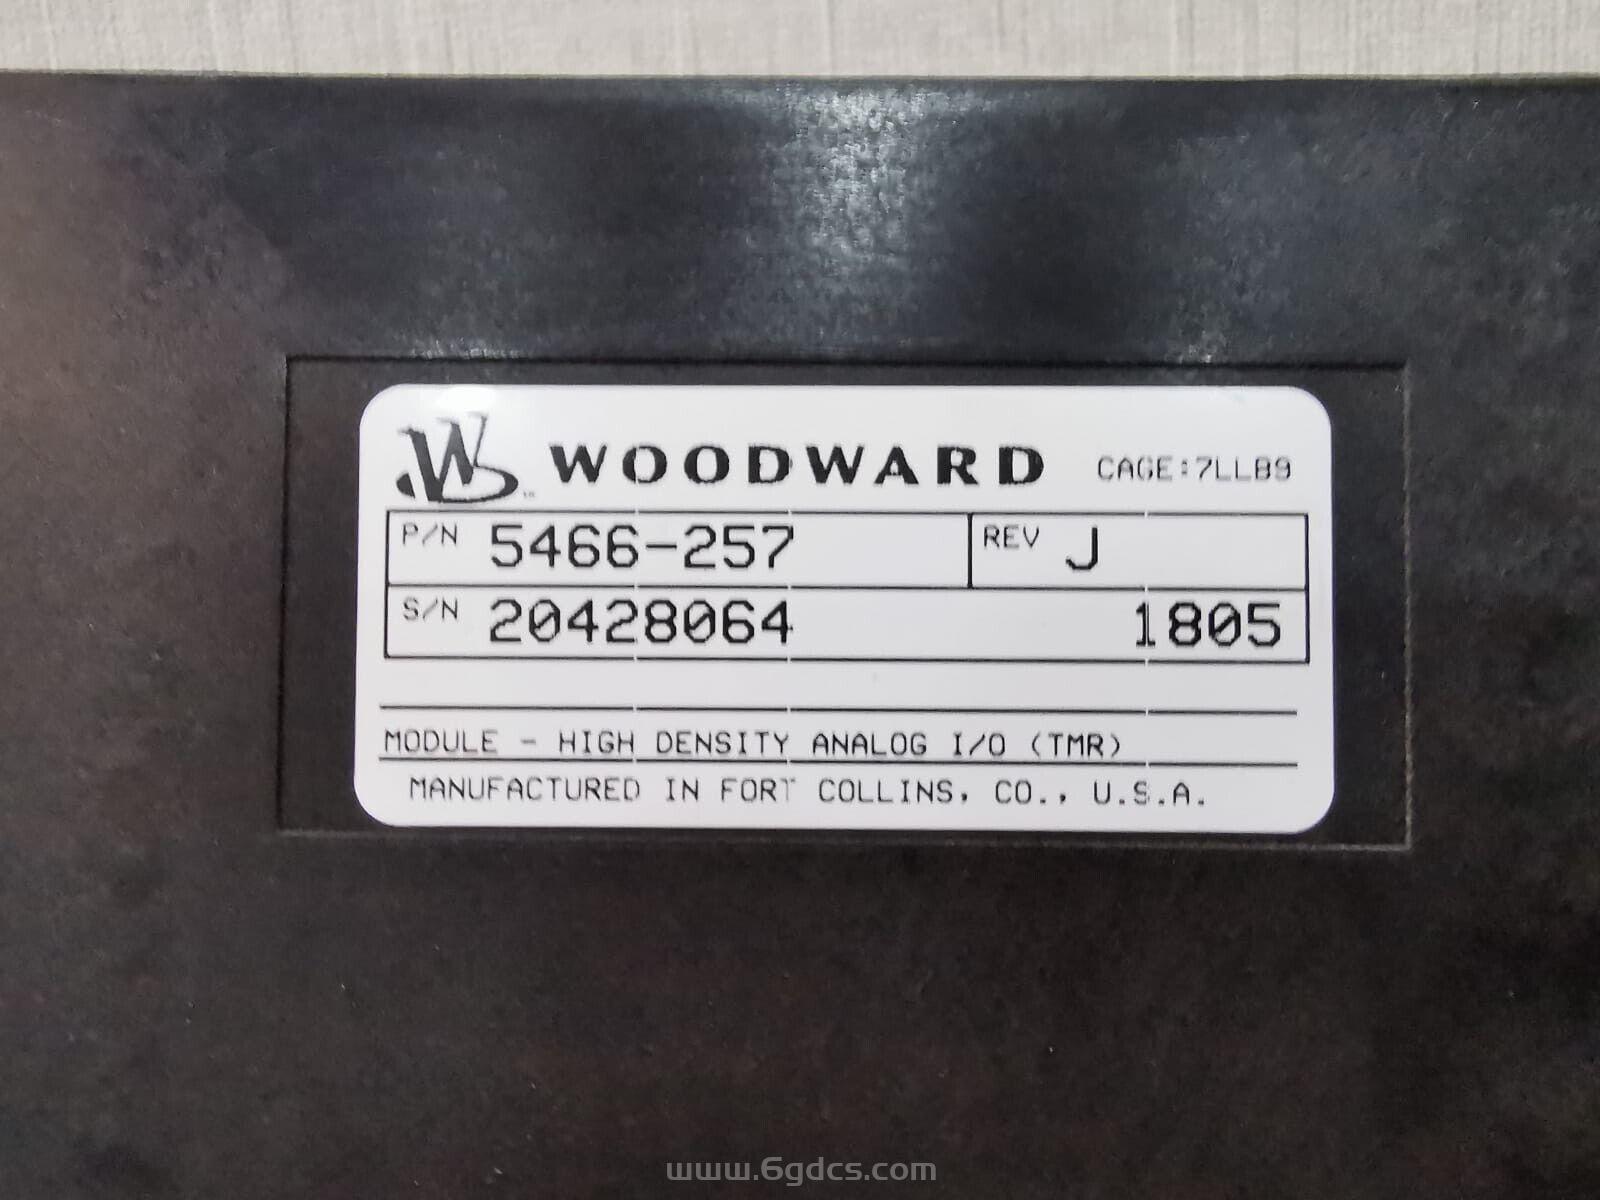 (5466-257 高密度分析 I/O 模块) WOODWARD伍德沃德 原装进口 正品全新现货 价格优惠